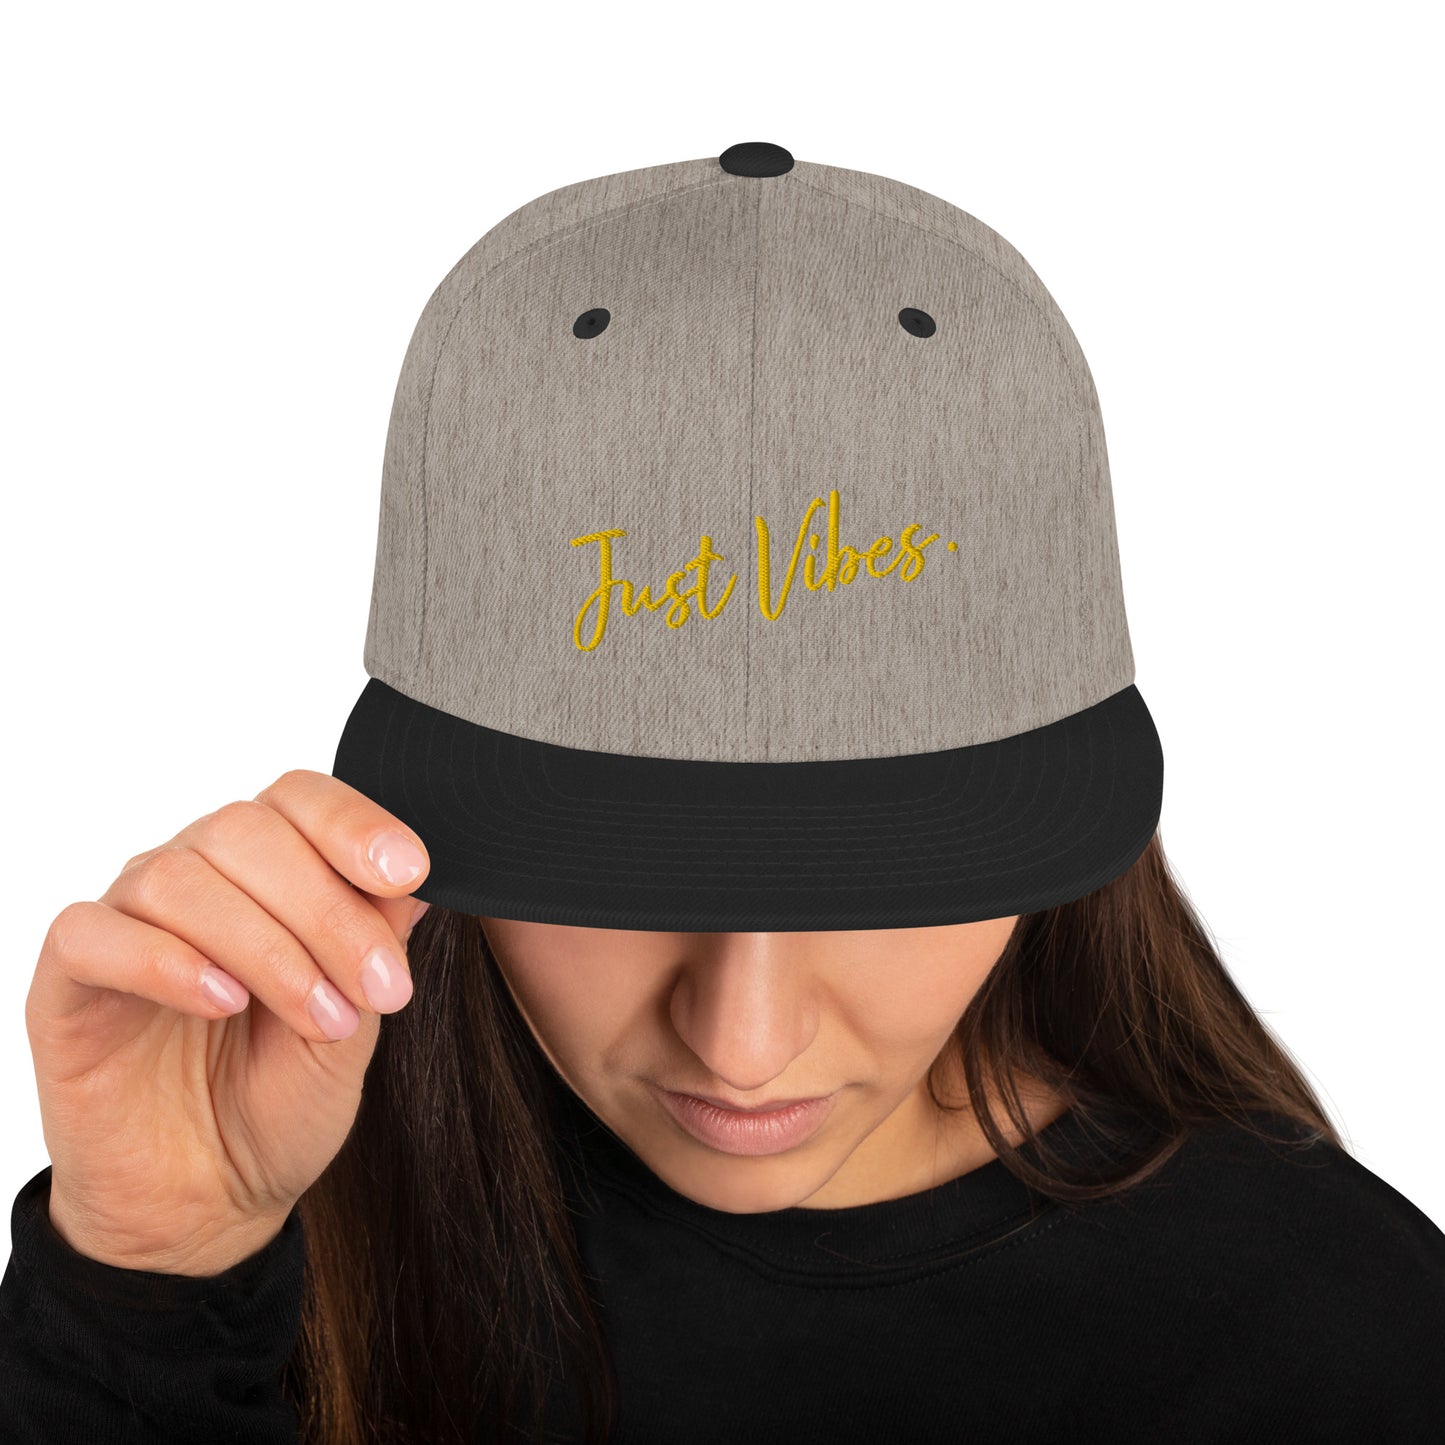 "Just Vibes" snapback cap